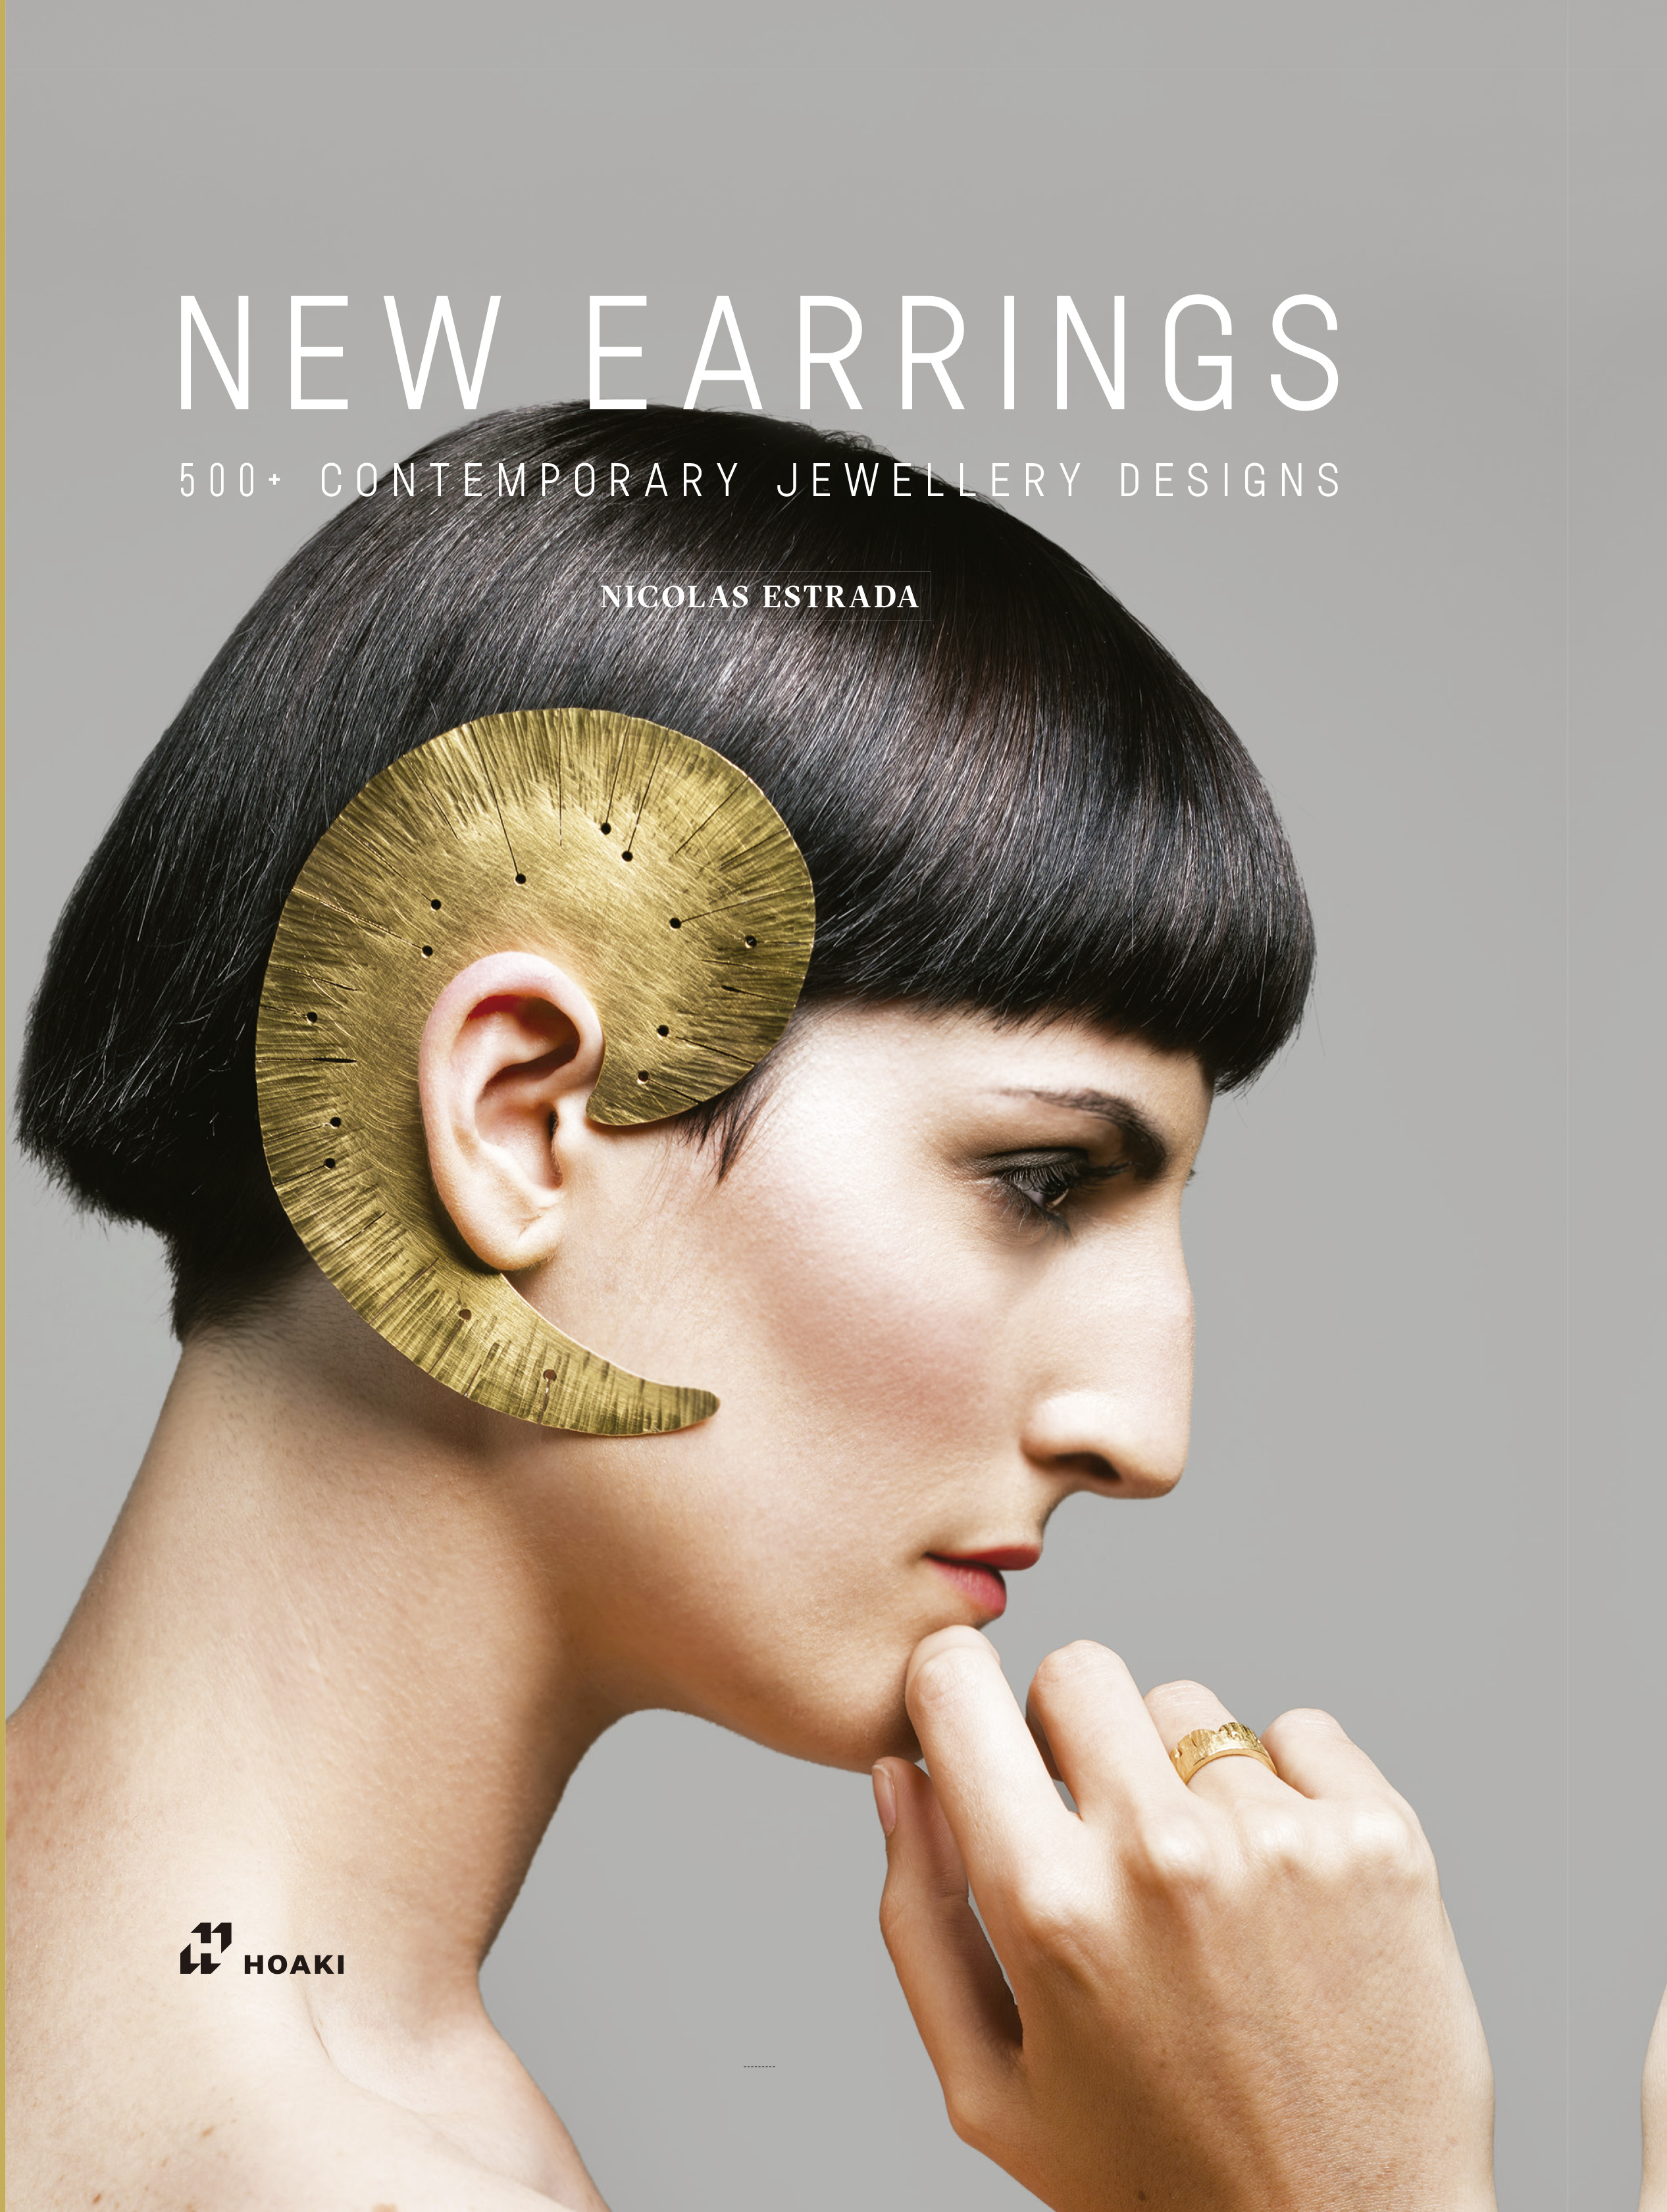 New Earrings: 500+ Contemporary Jewellery Designs by Nicolas Estrada